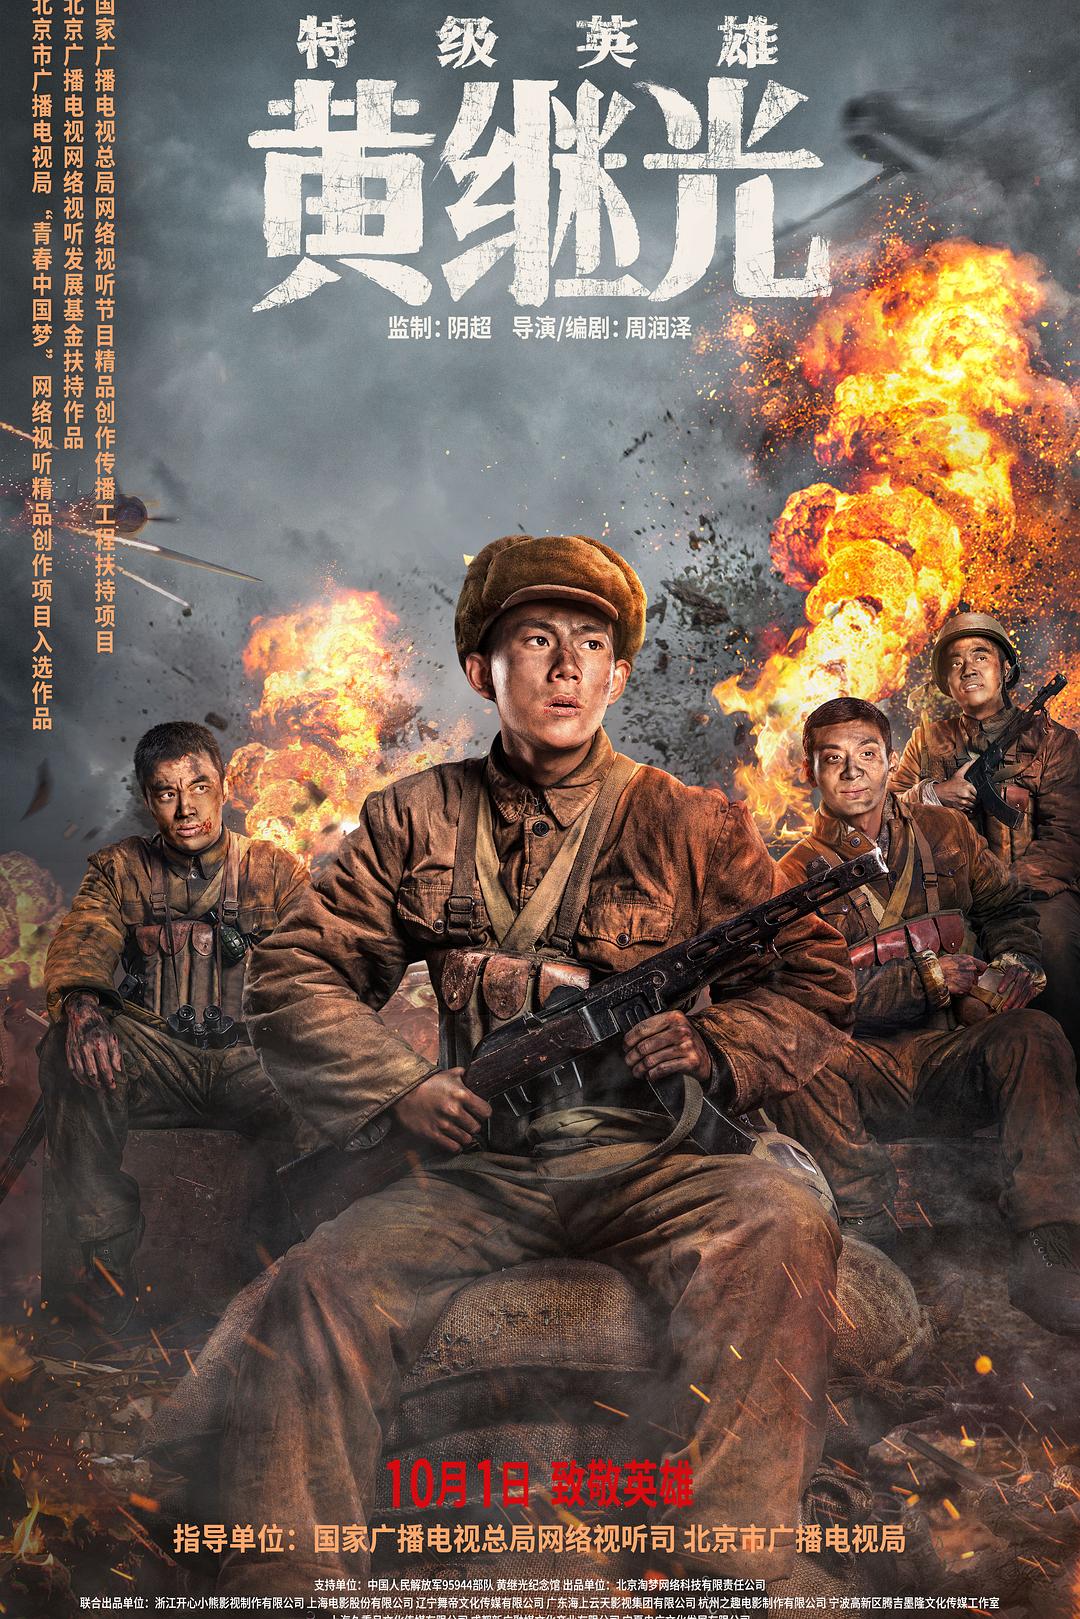 2022年传记战争《特级英雄黄继光》HD国语中文字幕高清正版